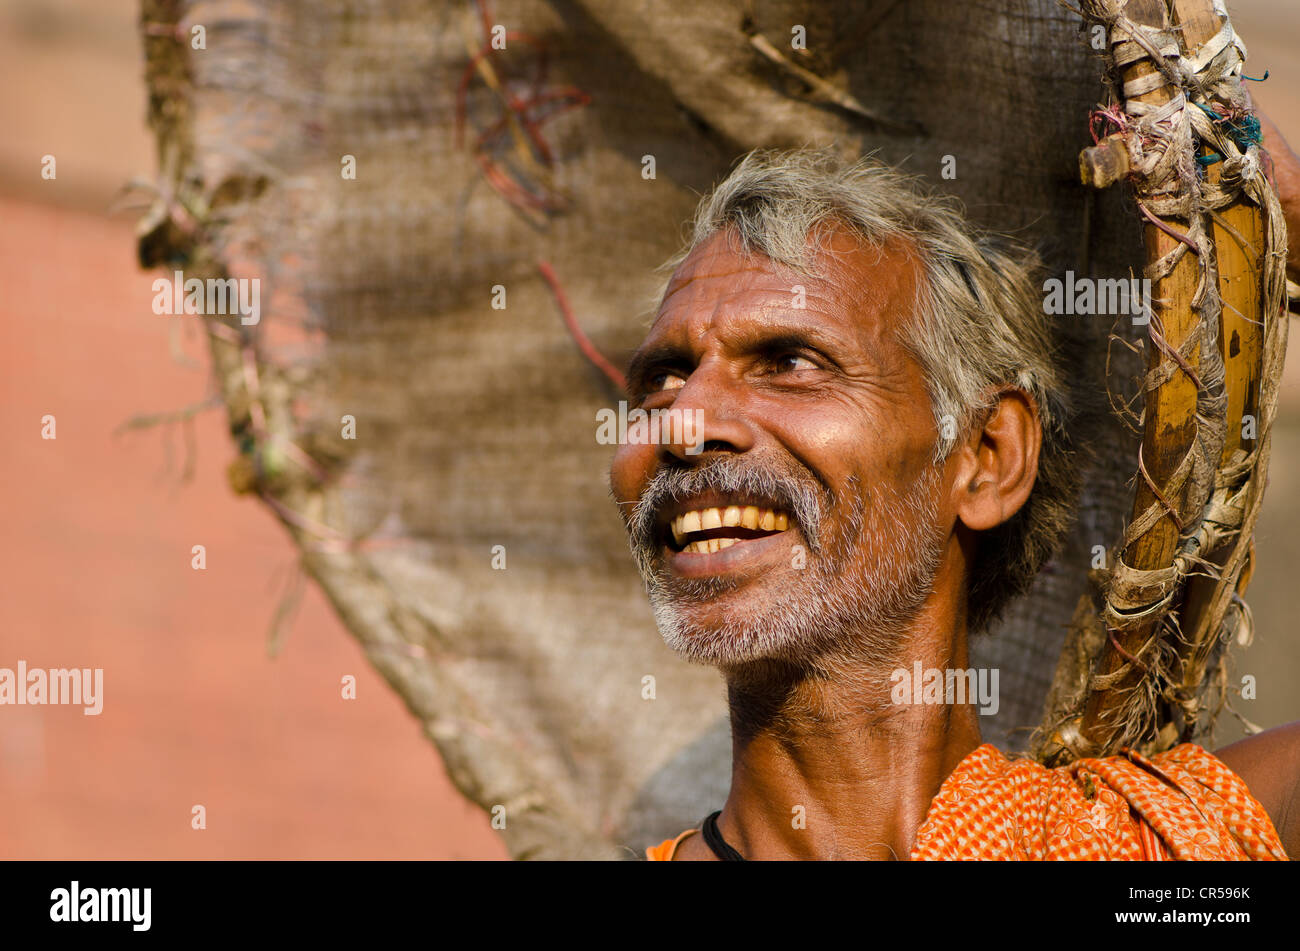 Friendly man, portrait, Kolkata, West Bengal, India, Asia Stock Photo